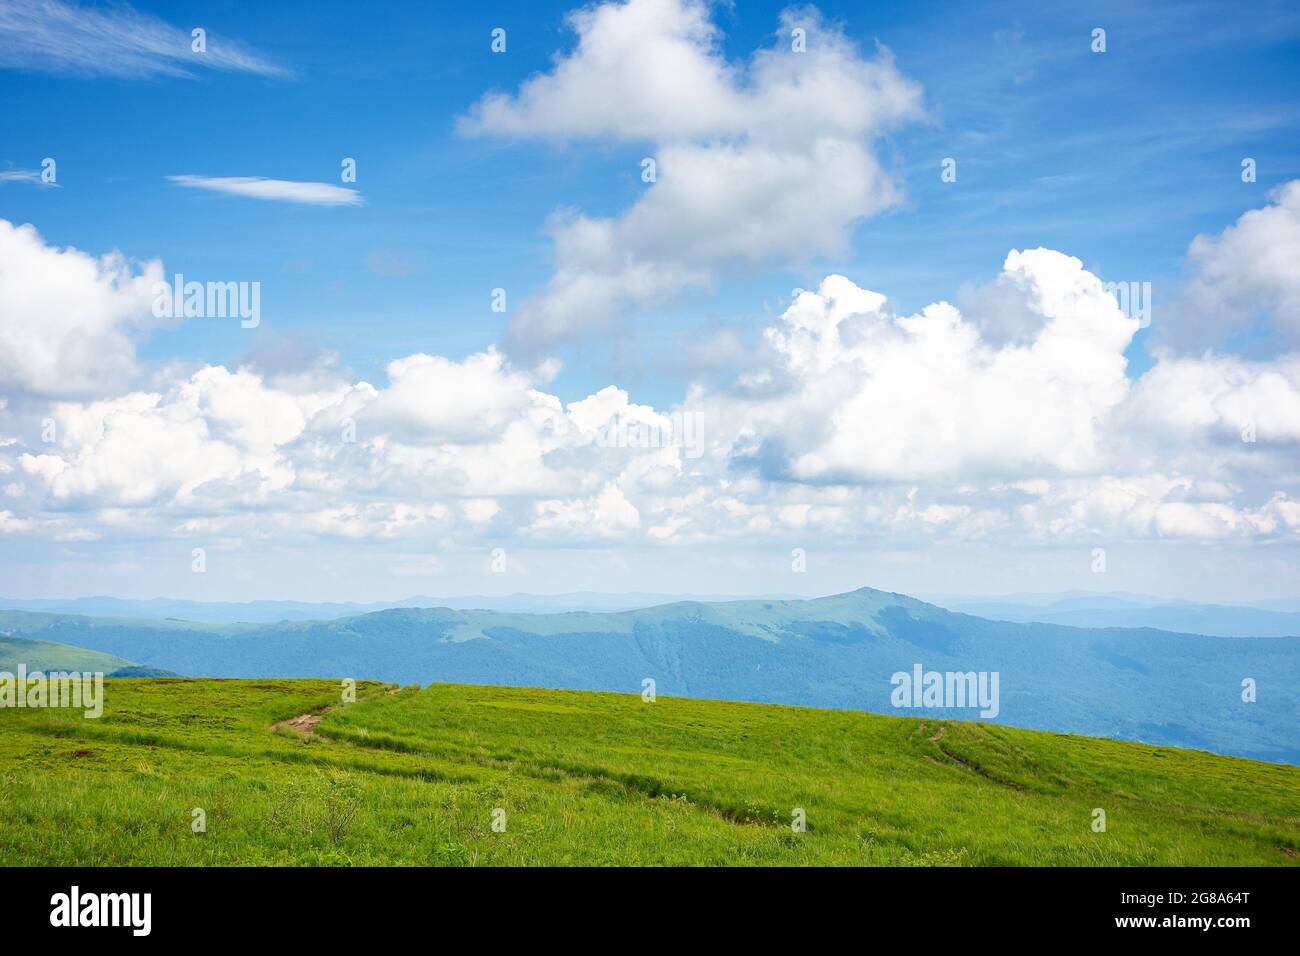 Idyllische Sommerlandschaft. Wiese und hoher Gipfel in der Ferne. Sonniges Wetter mit flauschigen Wolken am blauen Himmel. Grüne und blaue Farbe in der Natur Stockfoto